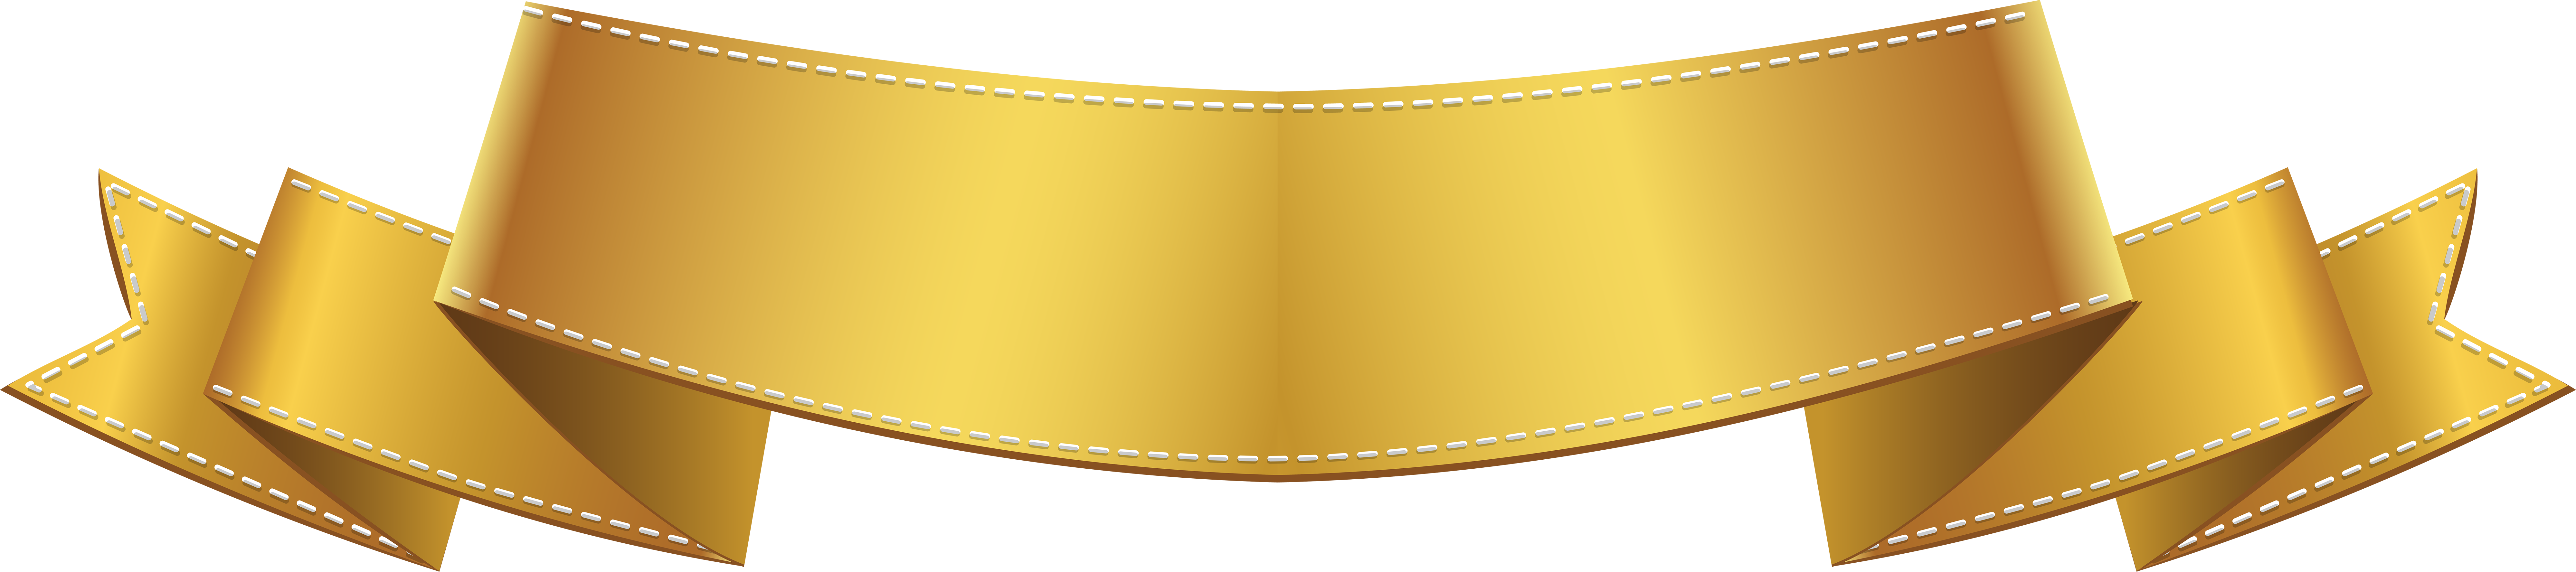 Golden Banner Clip Art PNG Image 